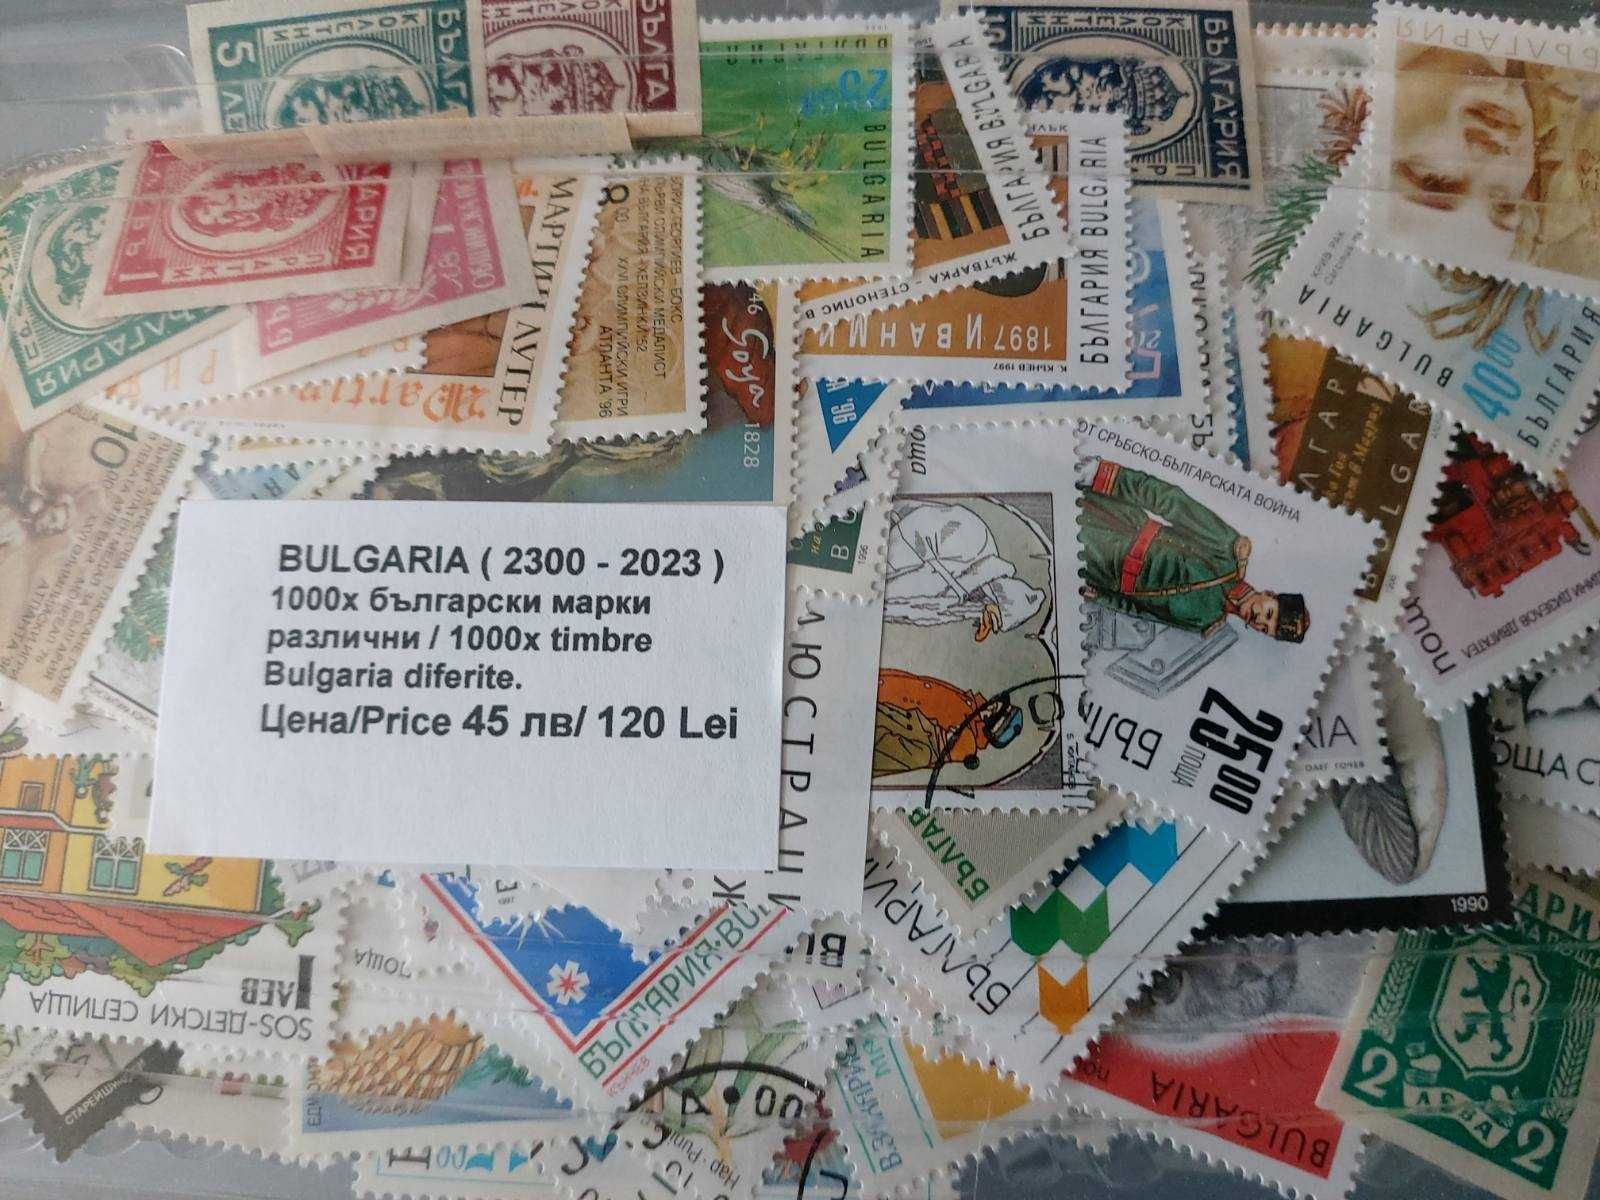 Български пощенски марки 1000 броя - различни